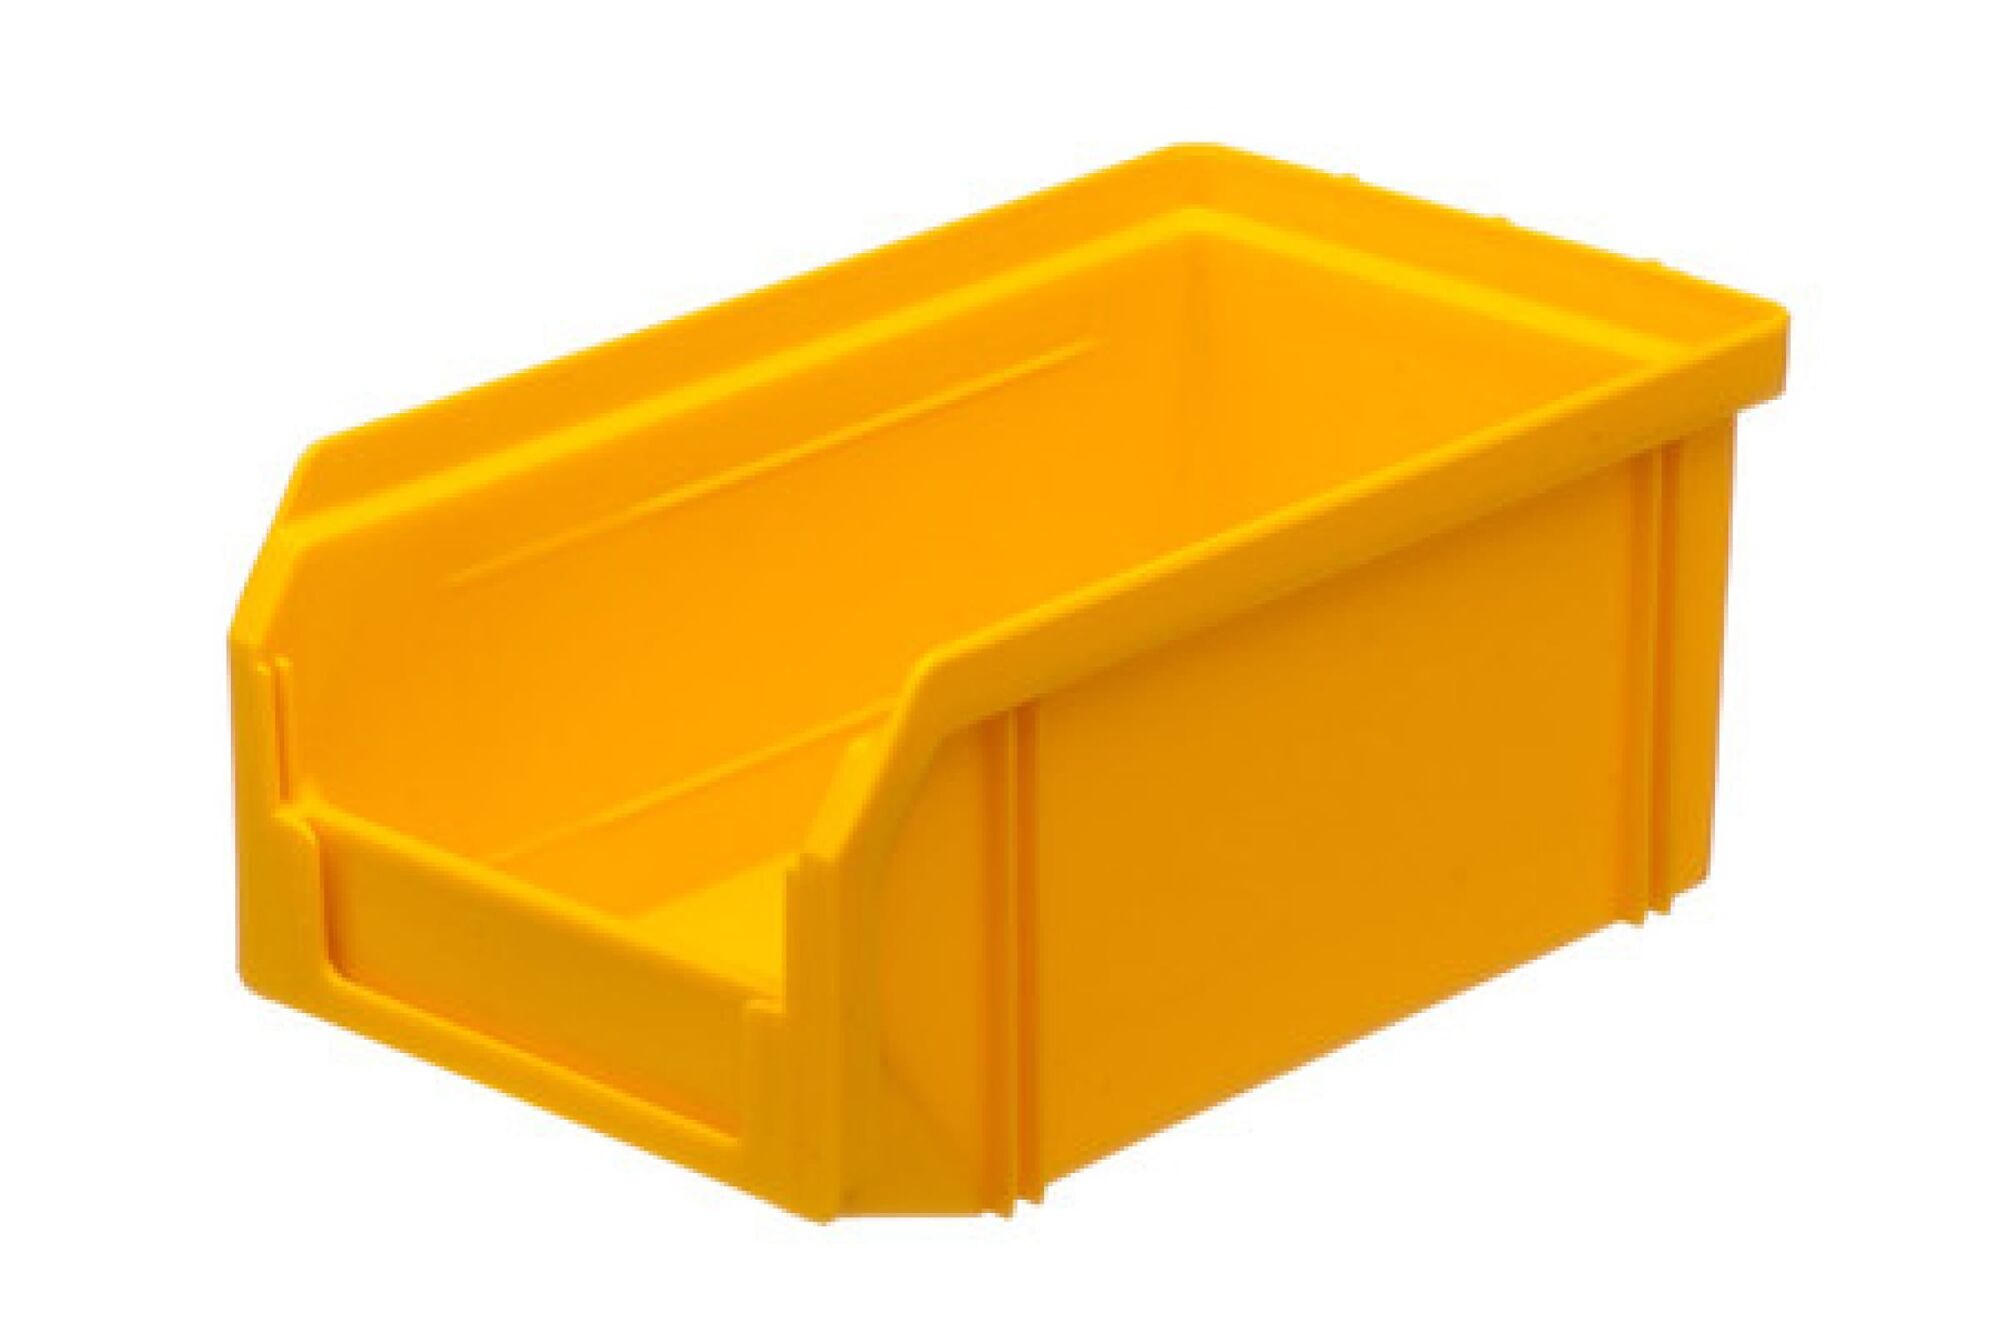 Лоток Стелла V-1 литр, желтый, Пластиковый 4623721402463